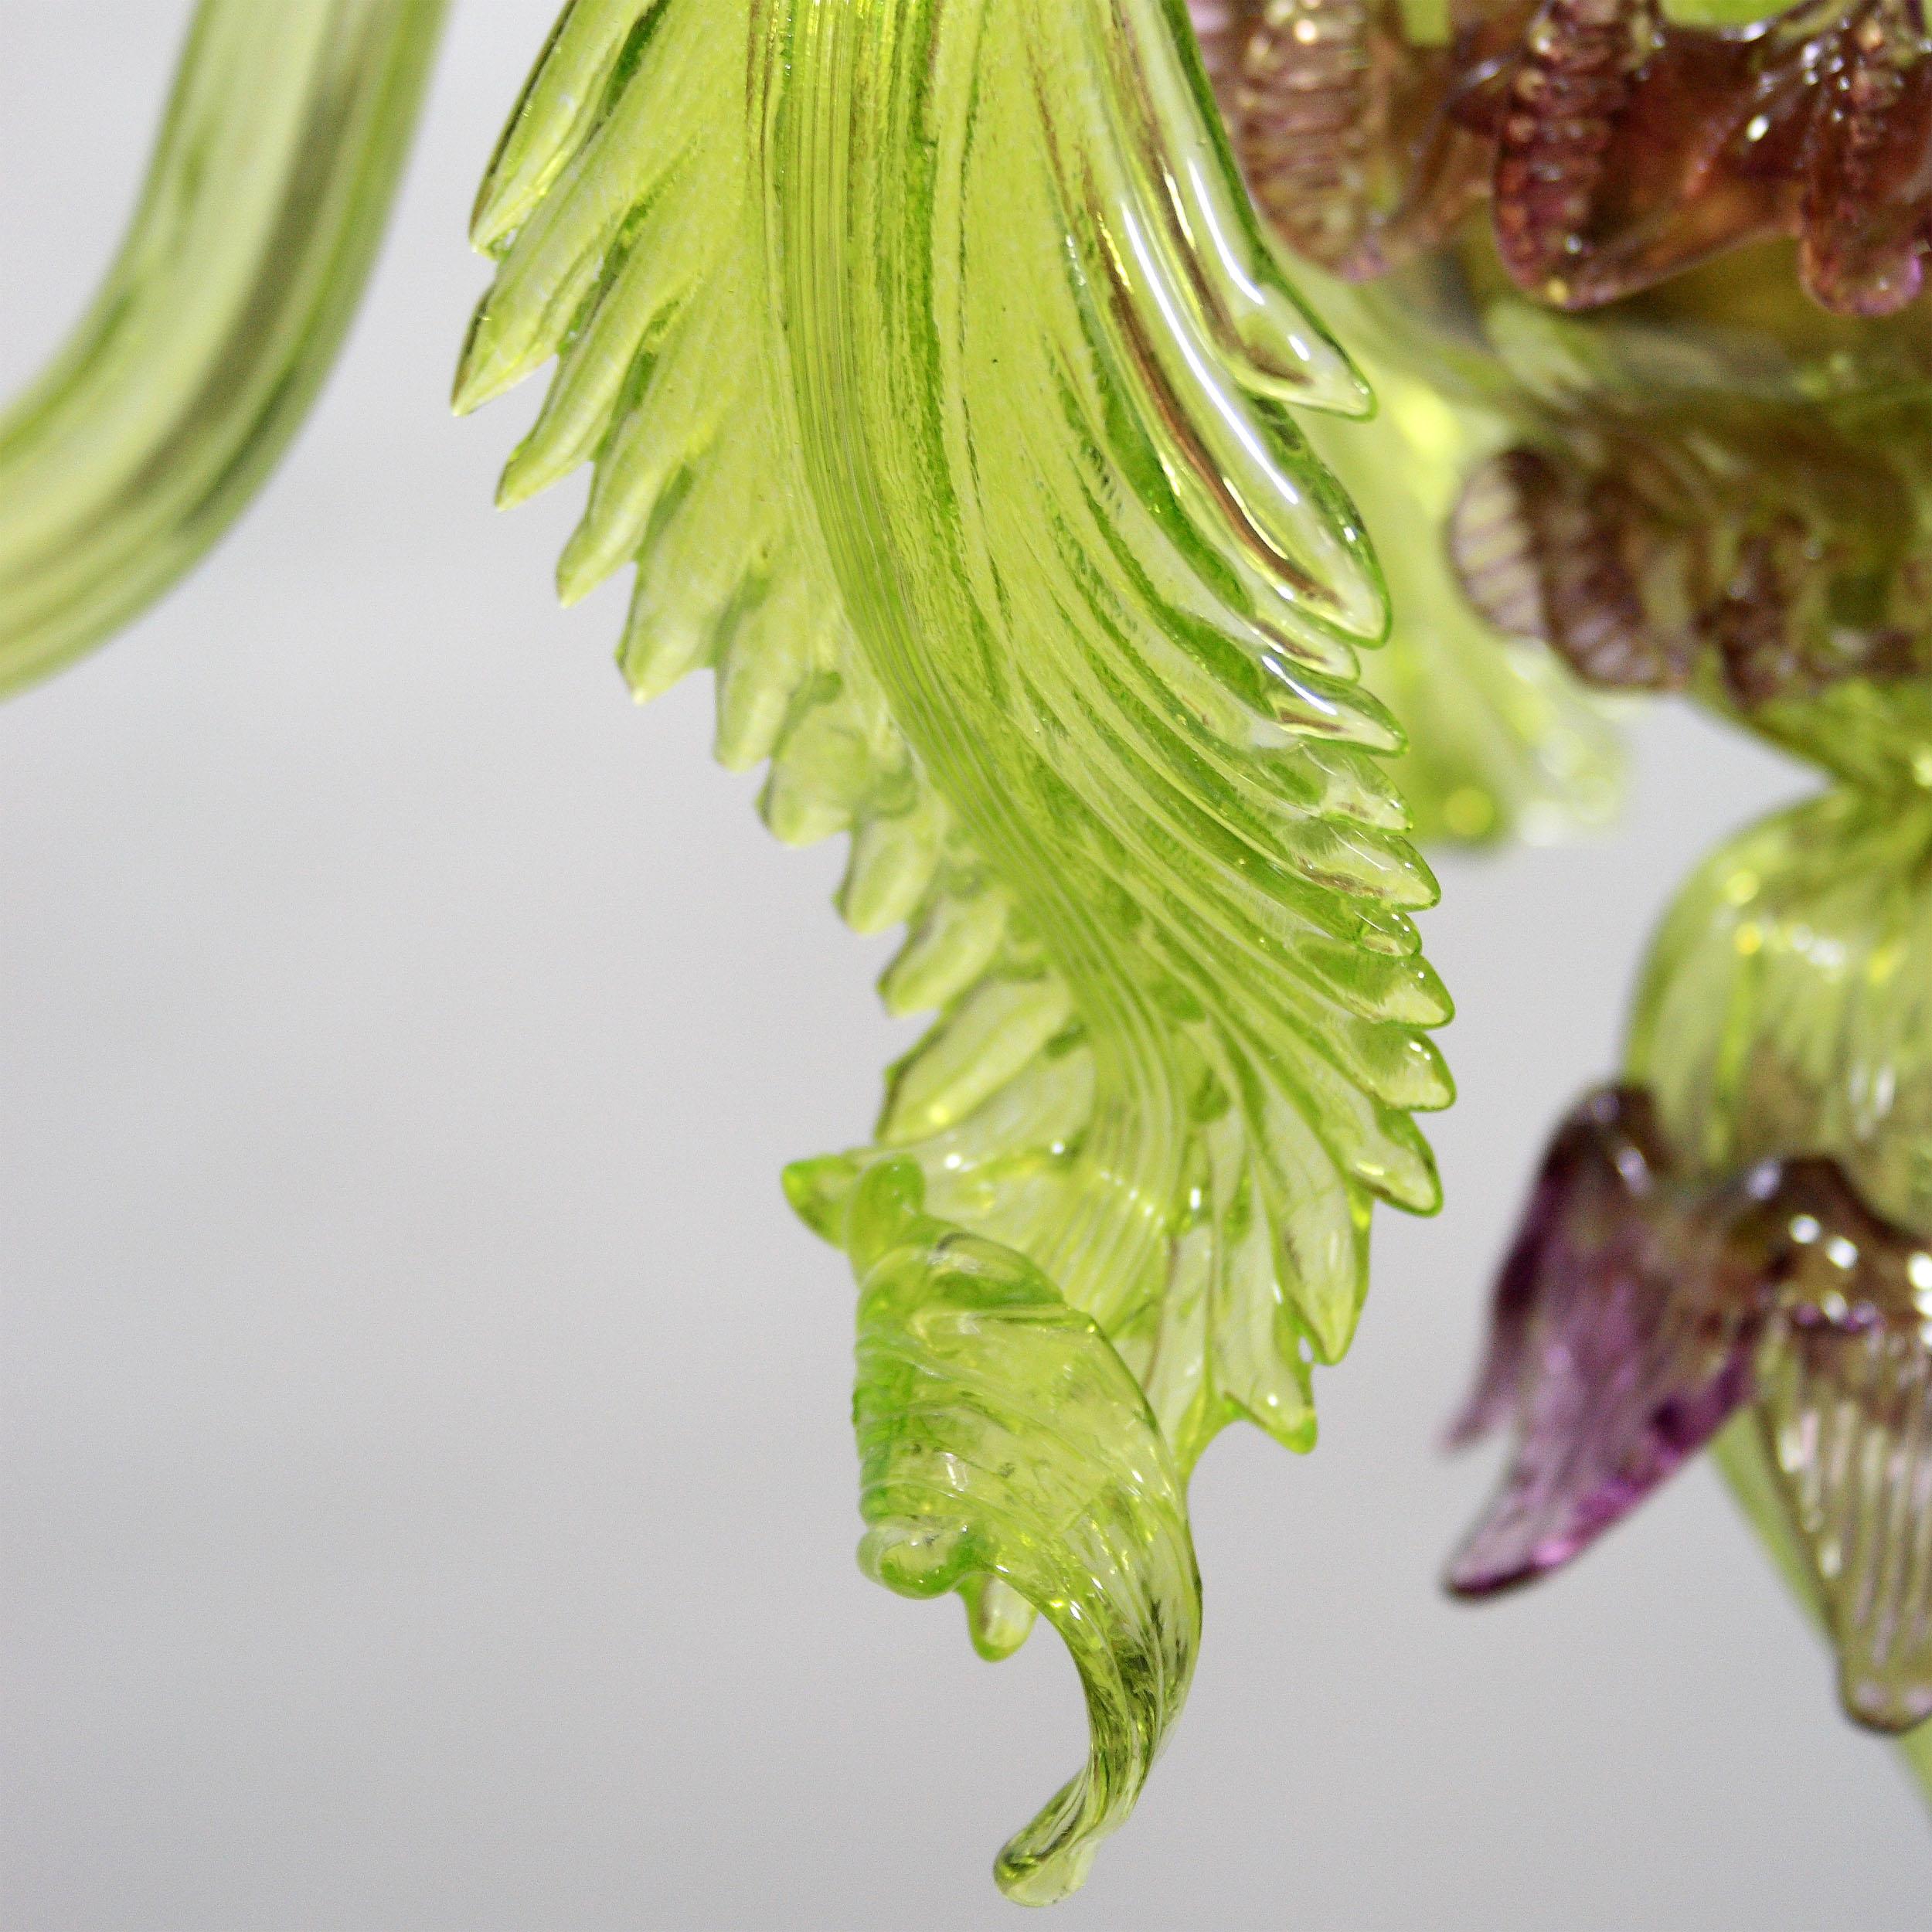 Lustre artistique riche 3 bras vert, améthyste en verre de Murano avec des fleurs et morrise par Multiforme.
Lustres en verre artistiques originaux et innovants. Une collection inspirée de la nature. C'est une œuvre d'éclairage qui se distingue par